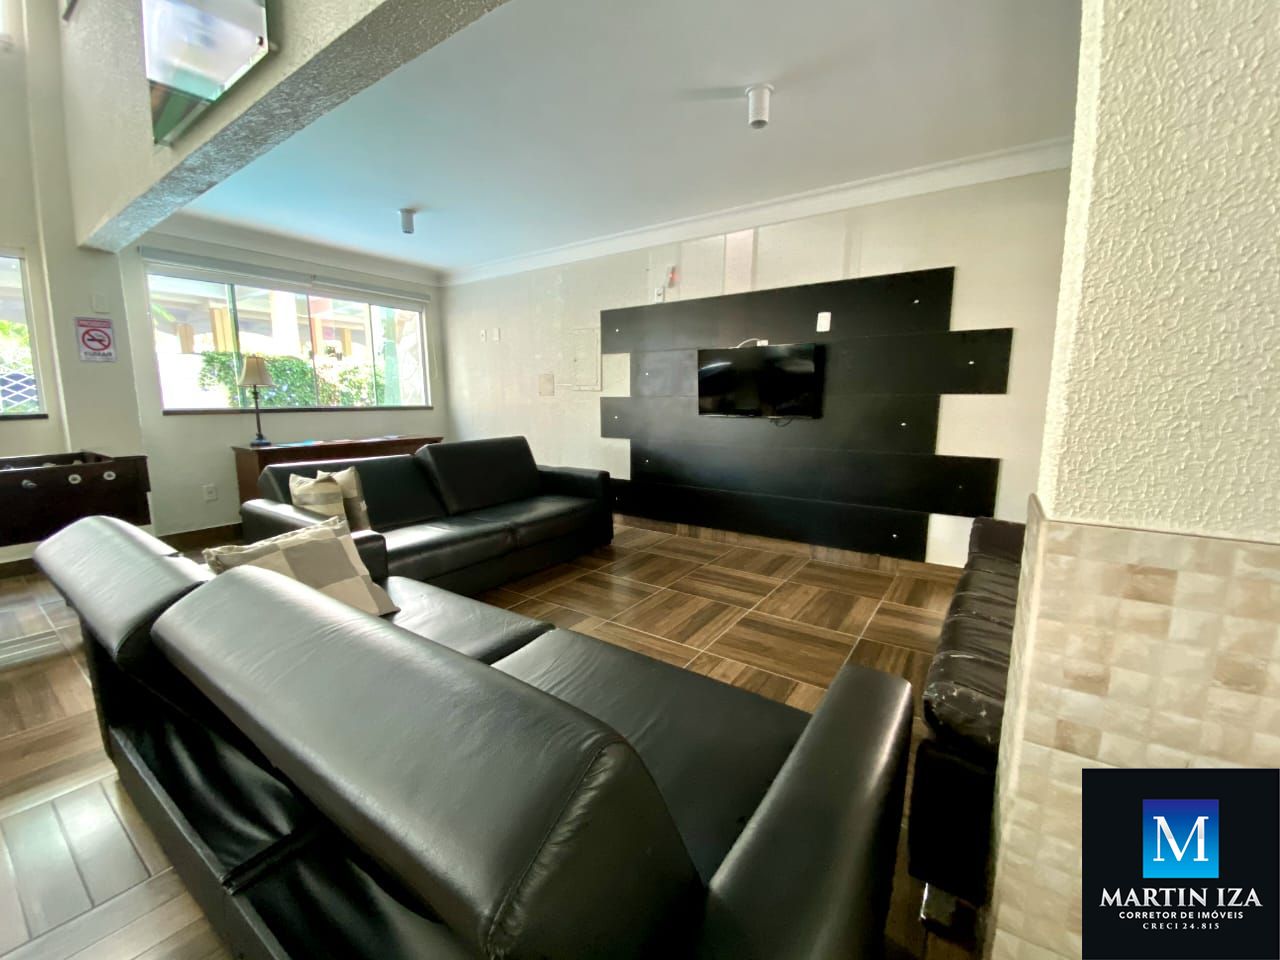 Apartamento com 1 Dormitórios para alugar, 44 m² por R$ 300,00